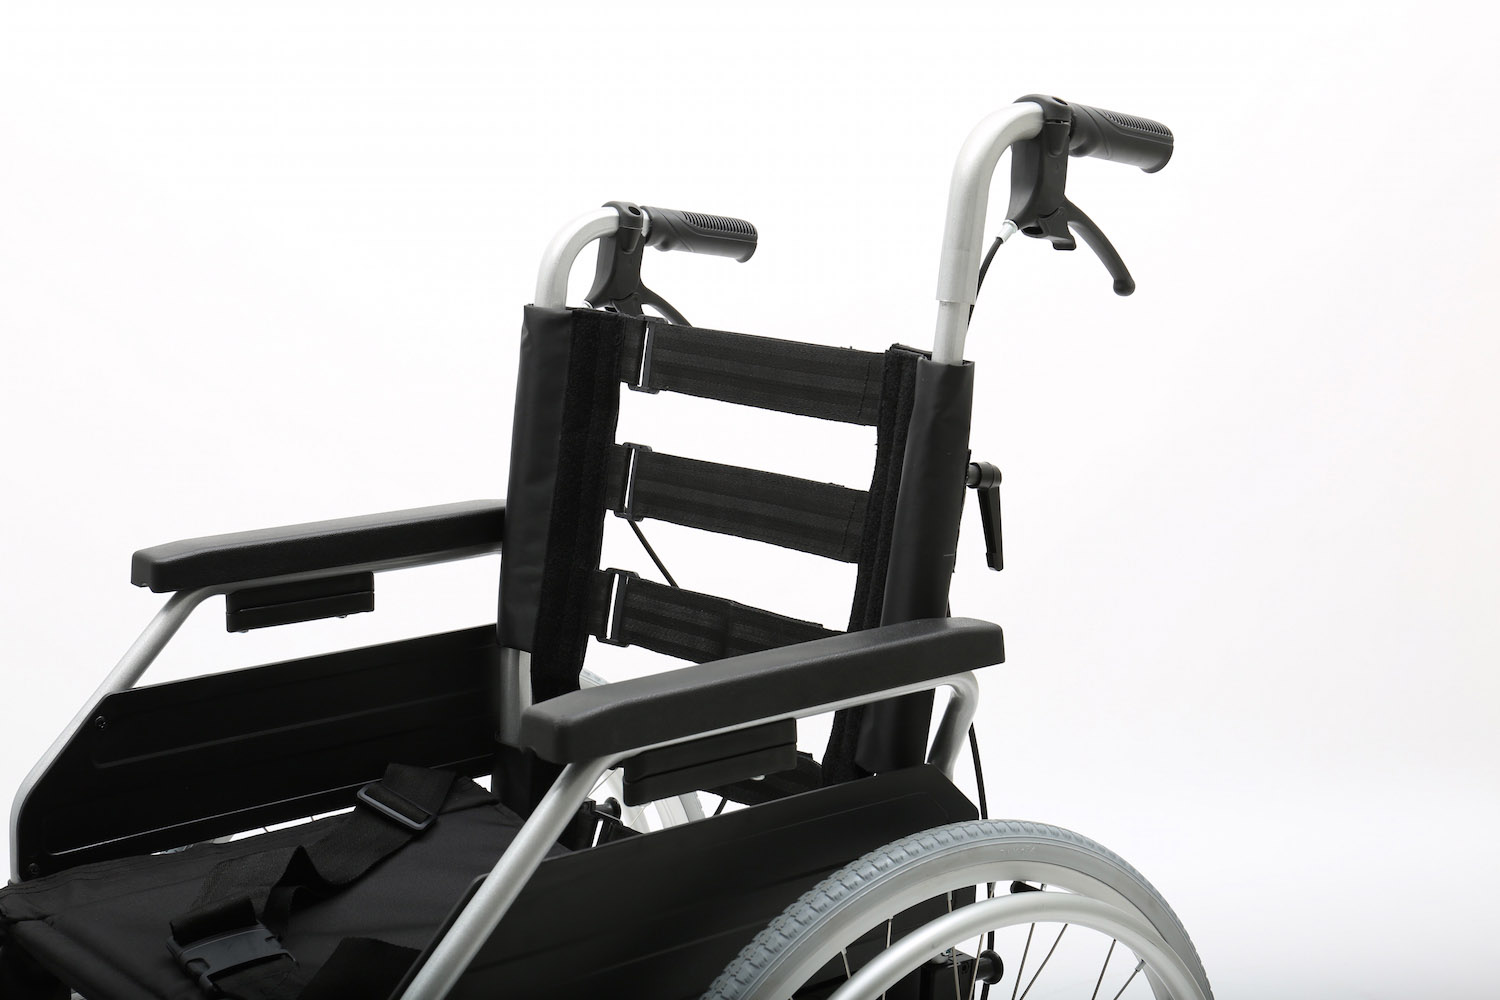 AL-001J Aluminum Light weight wheelchair